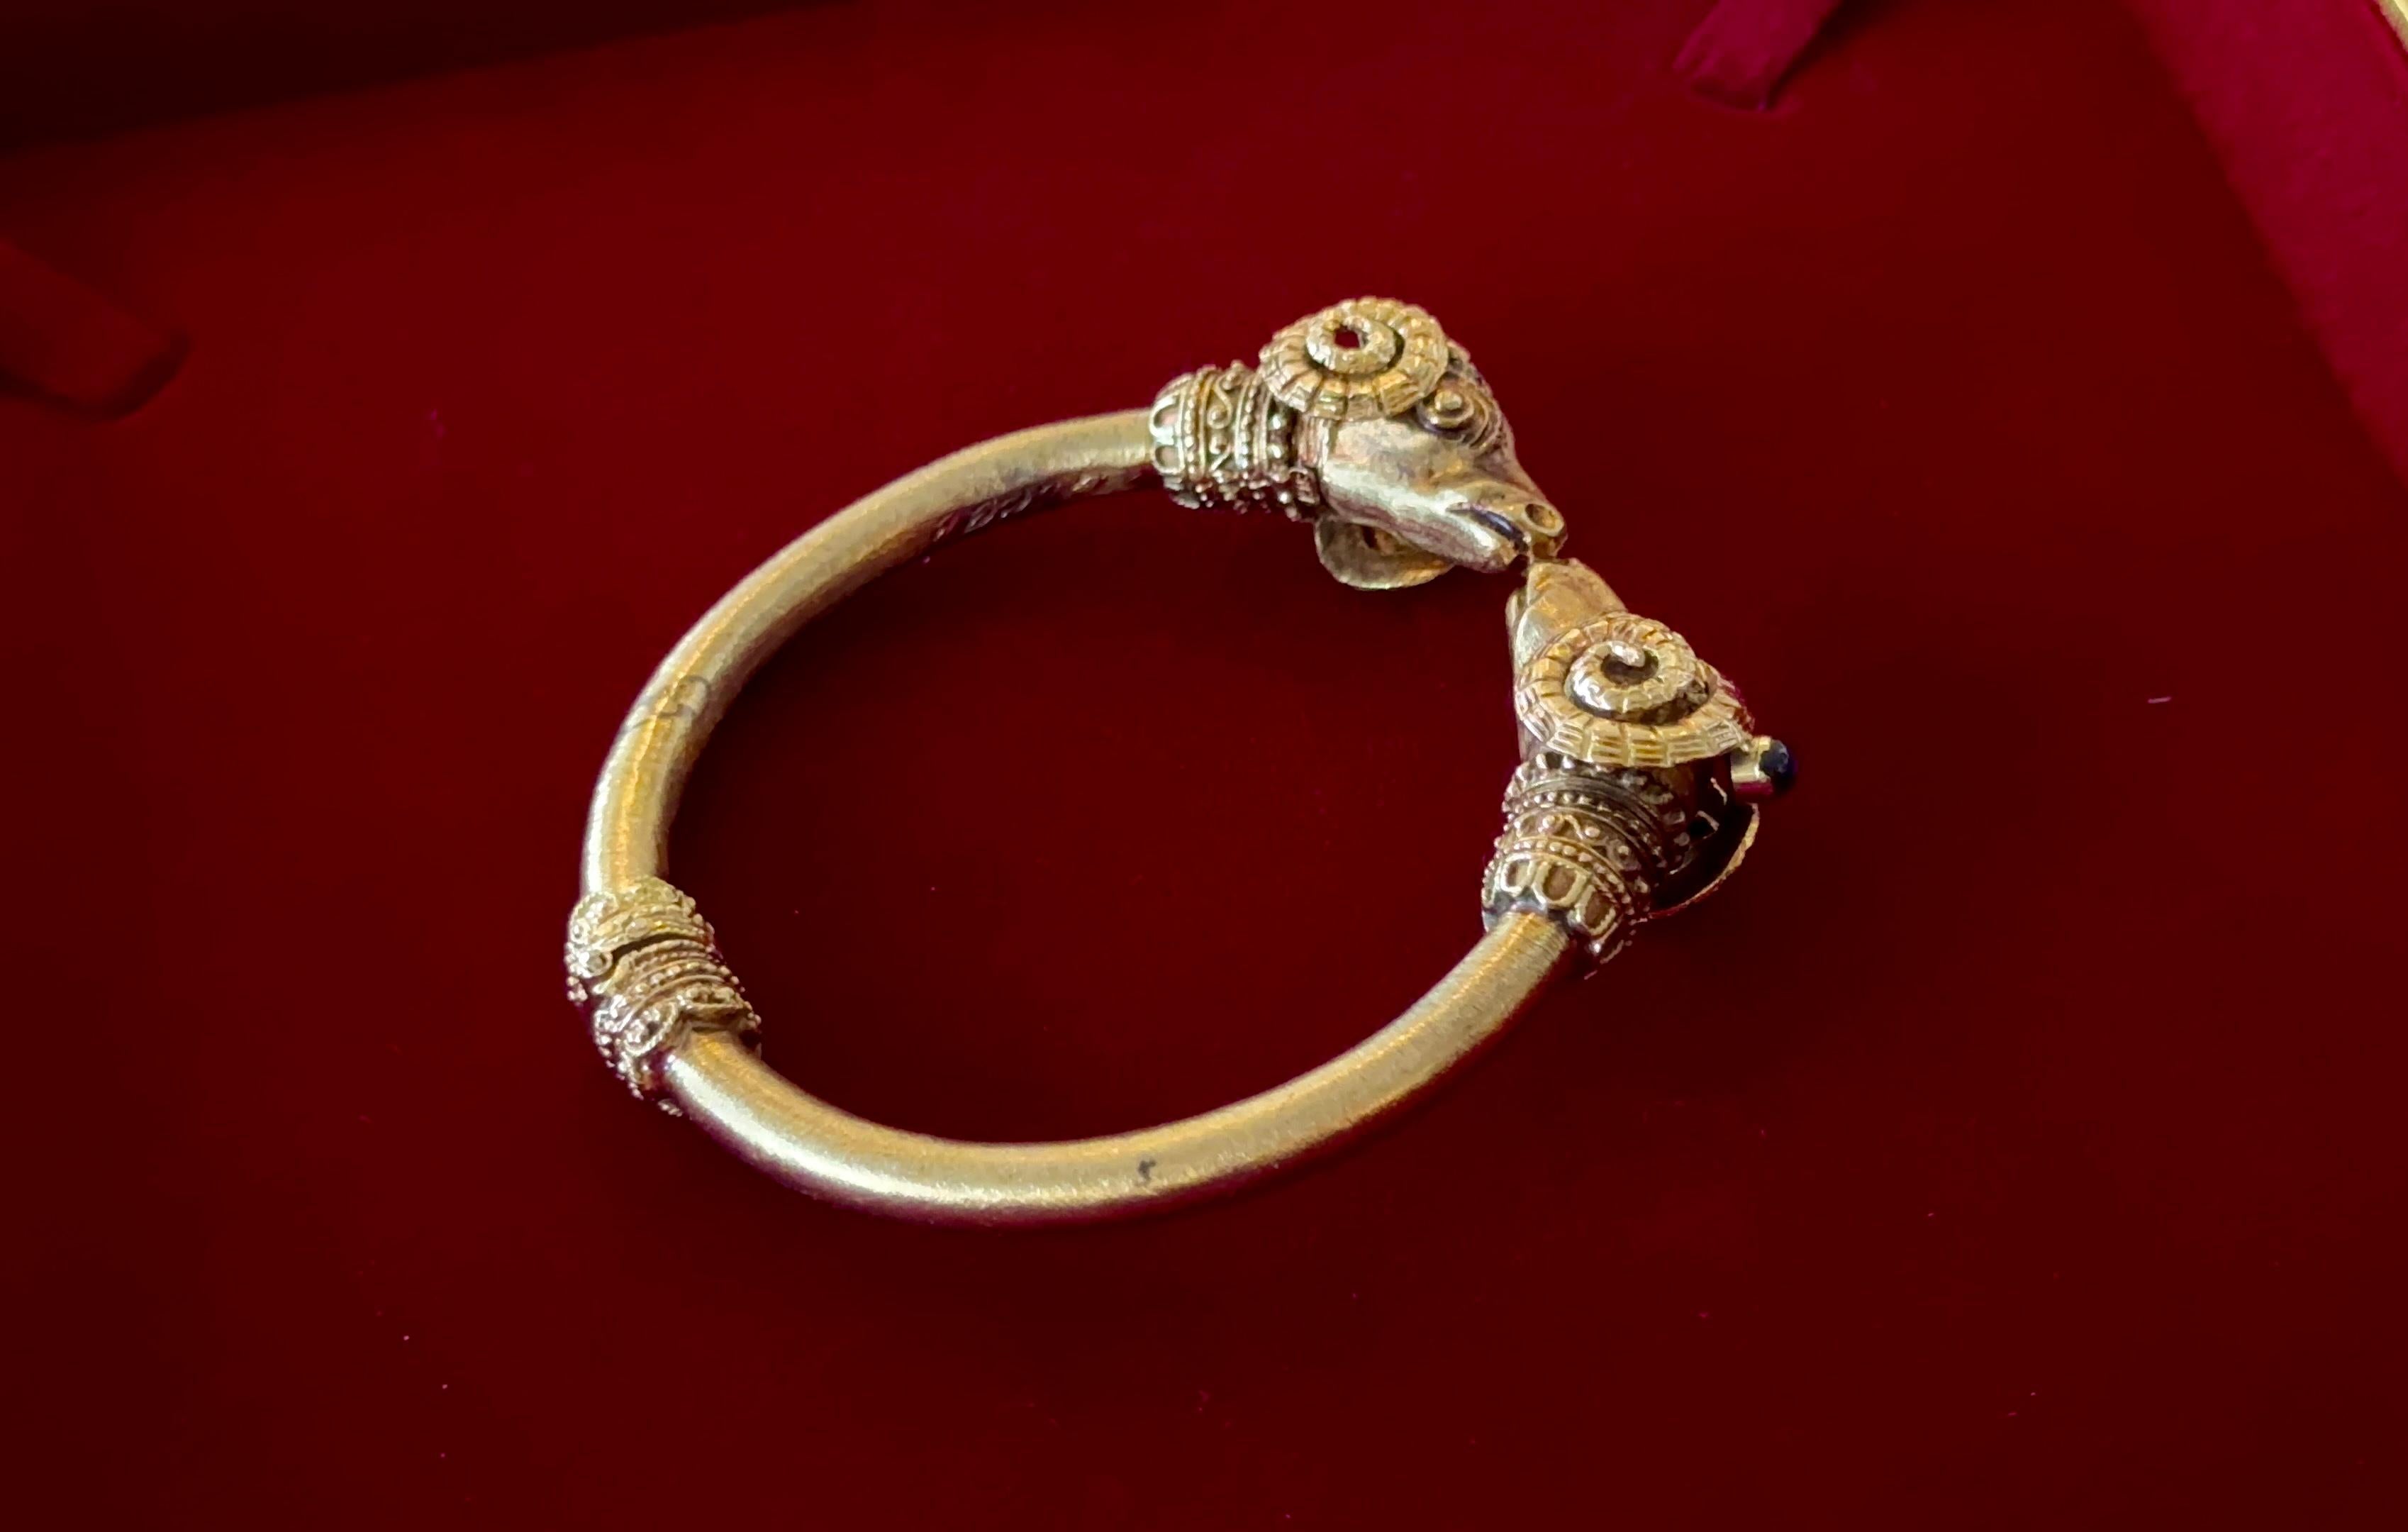 Vintage 18K Yellow Gold Etruscan Double Ram's Head Bracelet Cuff with Natural blue spphire.
Métal : or massif 18 carats.
Poids de l'or : 50,75 grammes.
Pierre précieuse : Saphir bleu naturel.
Poids de la pierre : environ 0,30 ctw.

